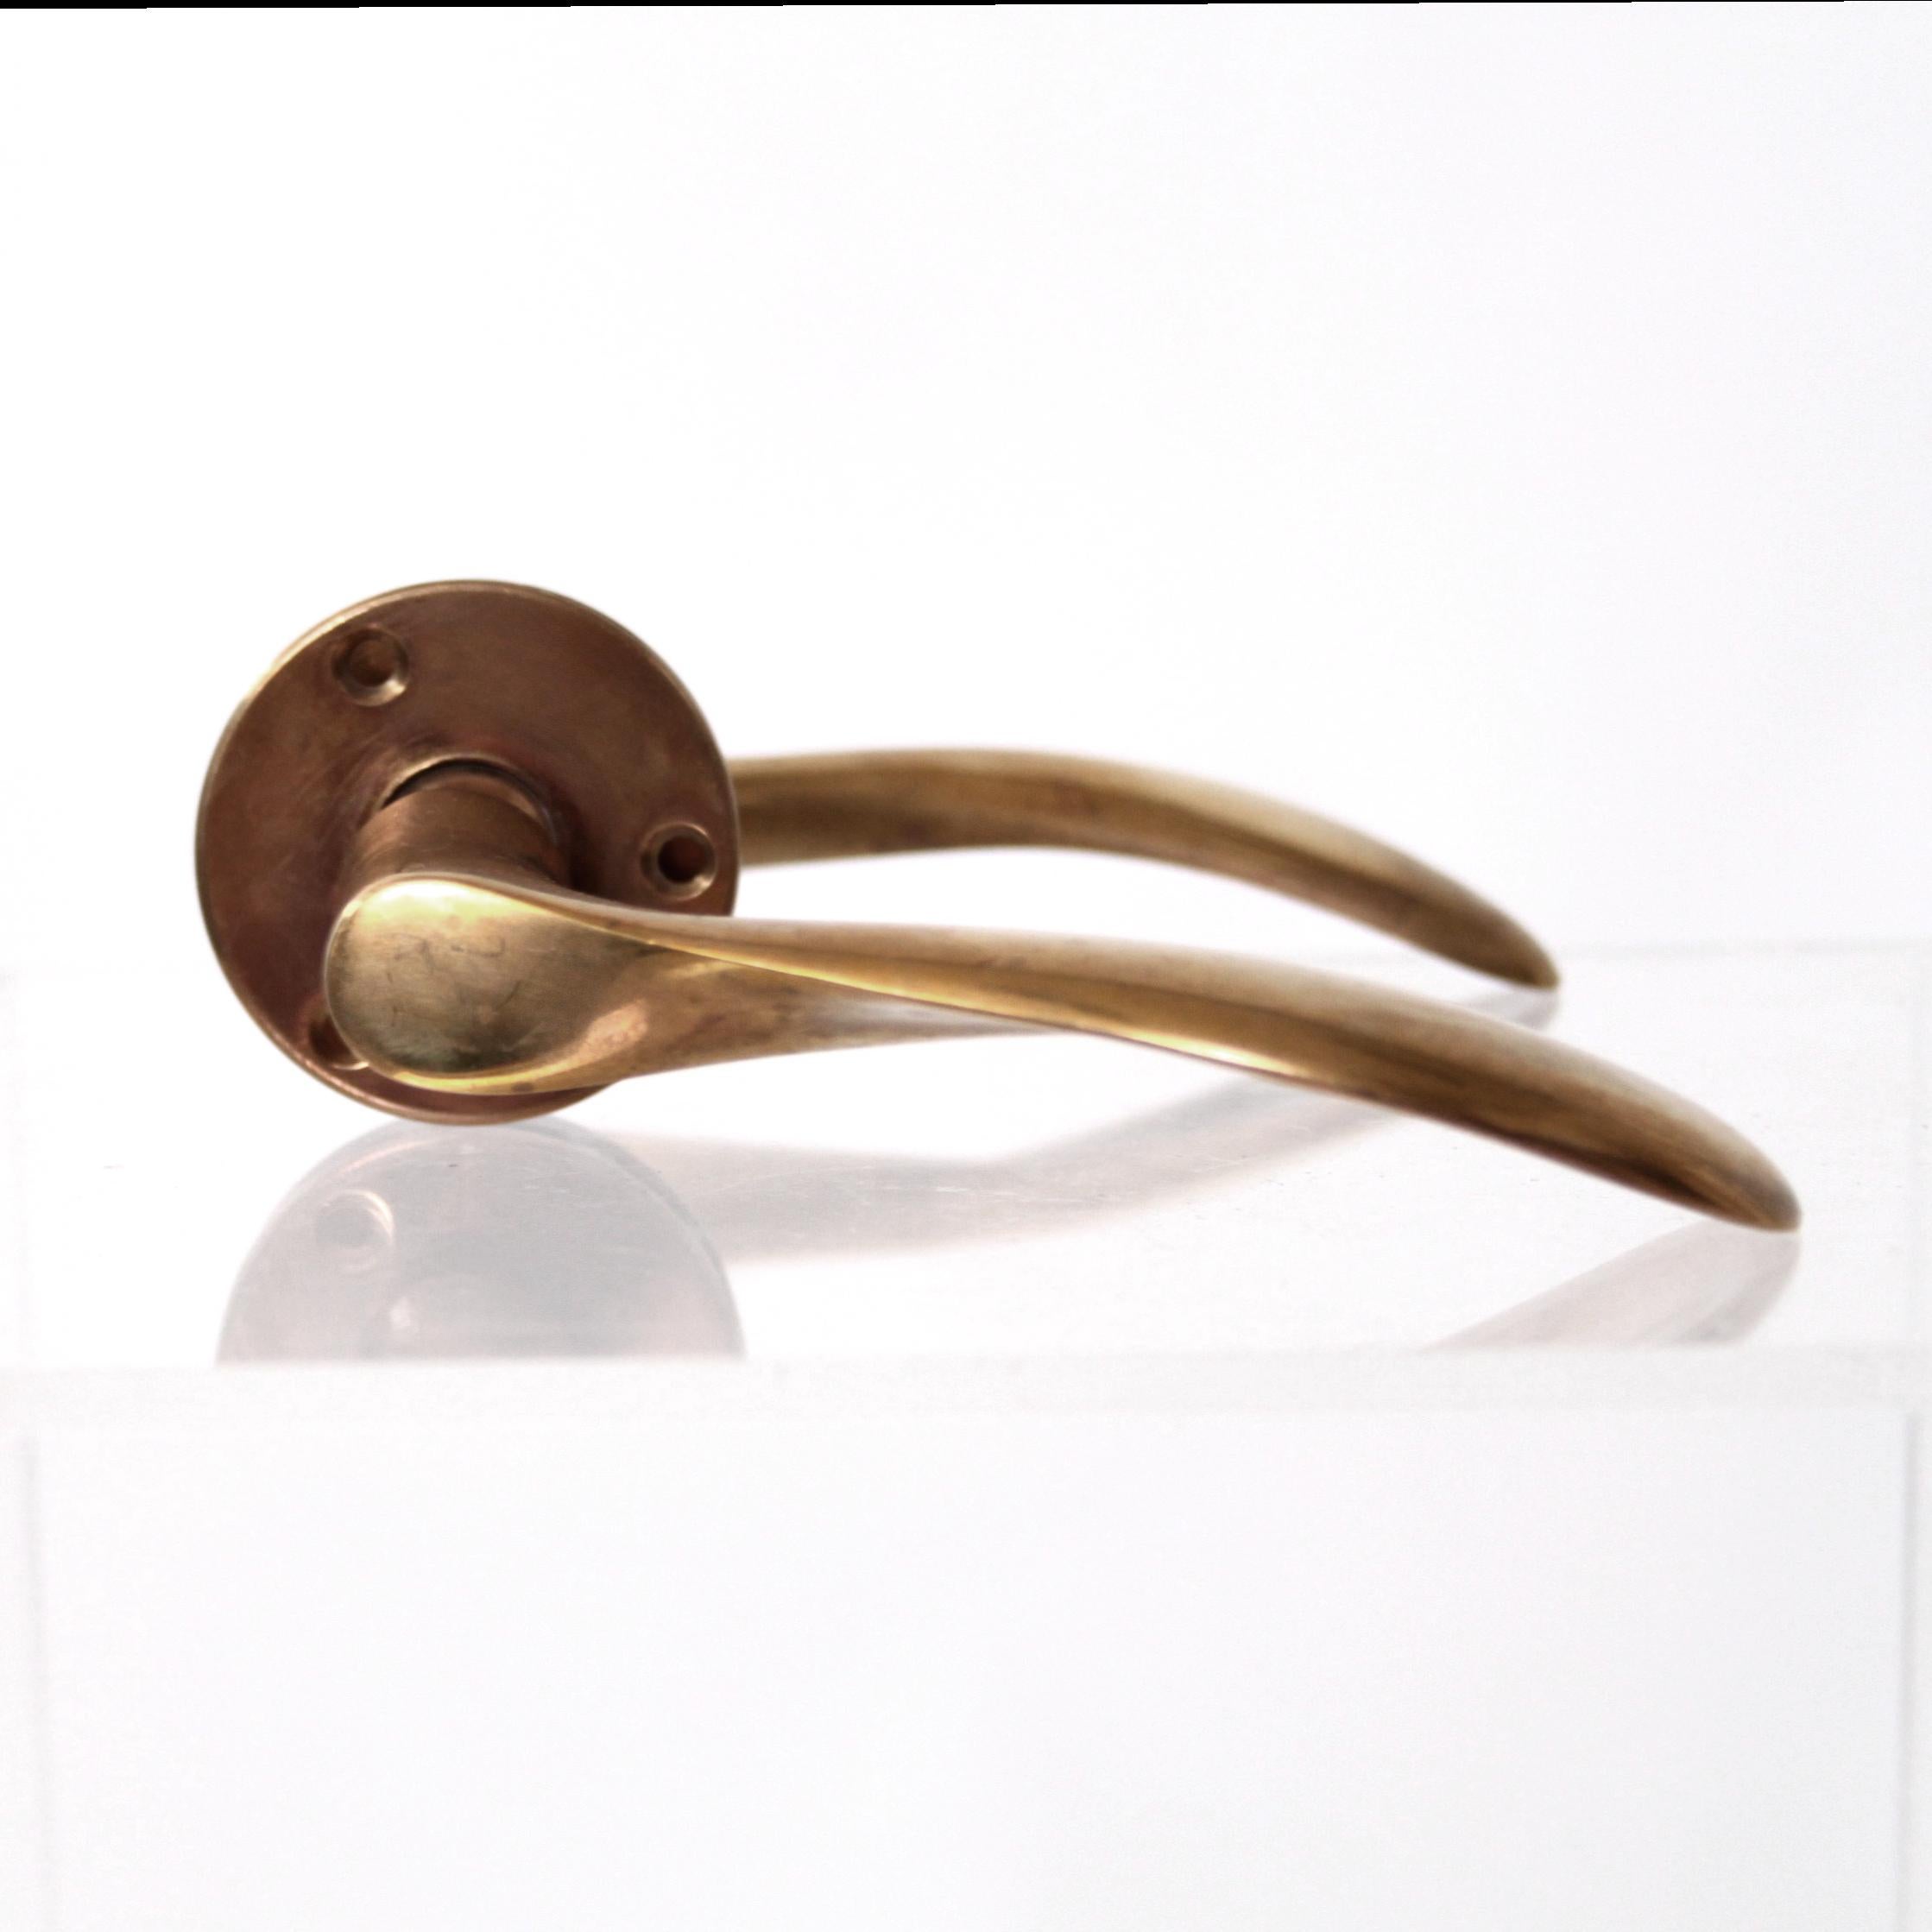 Scandinavian Modern Arne Jacobsen Brass Door Handles (Ten available)